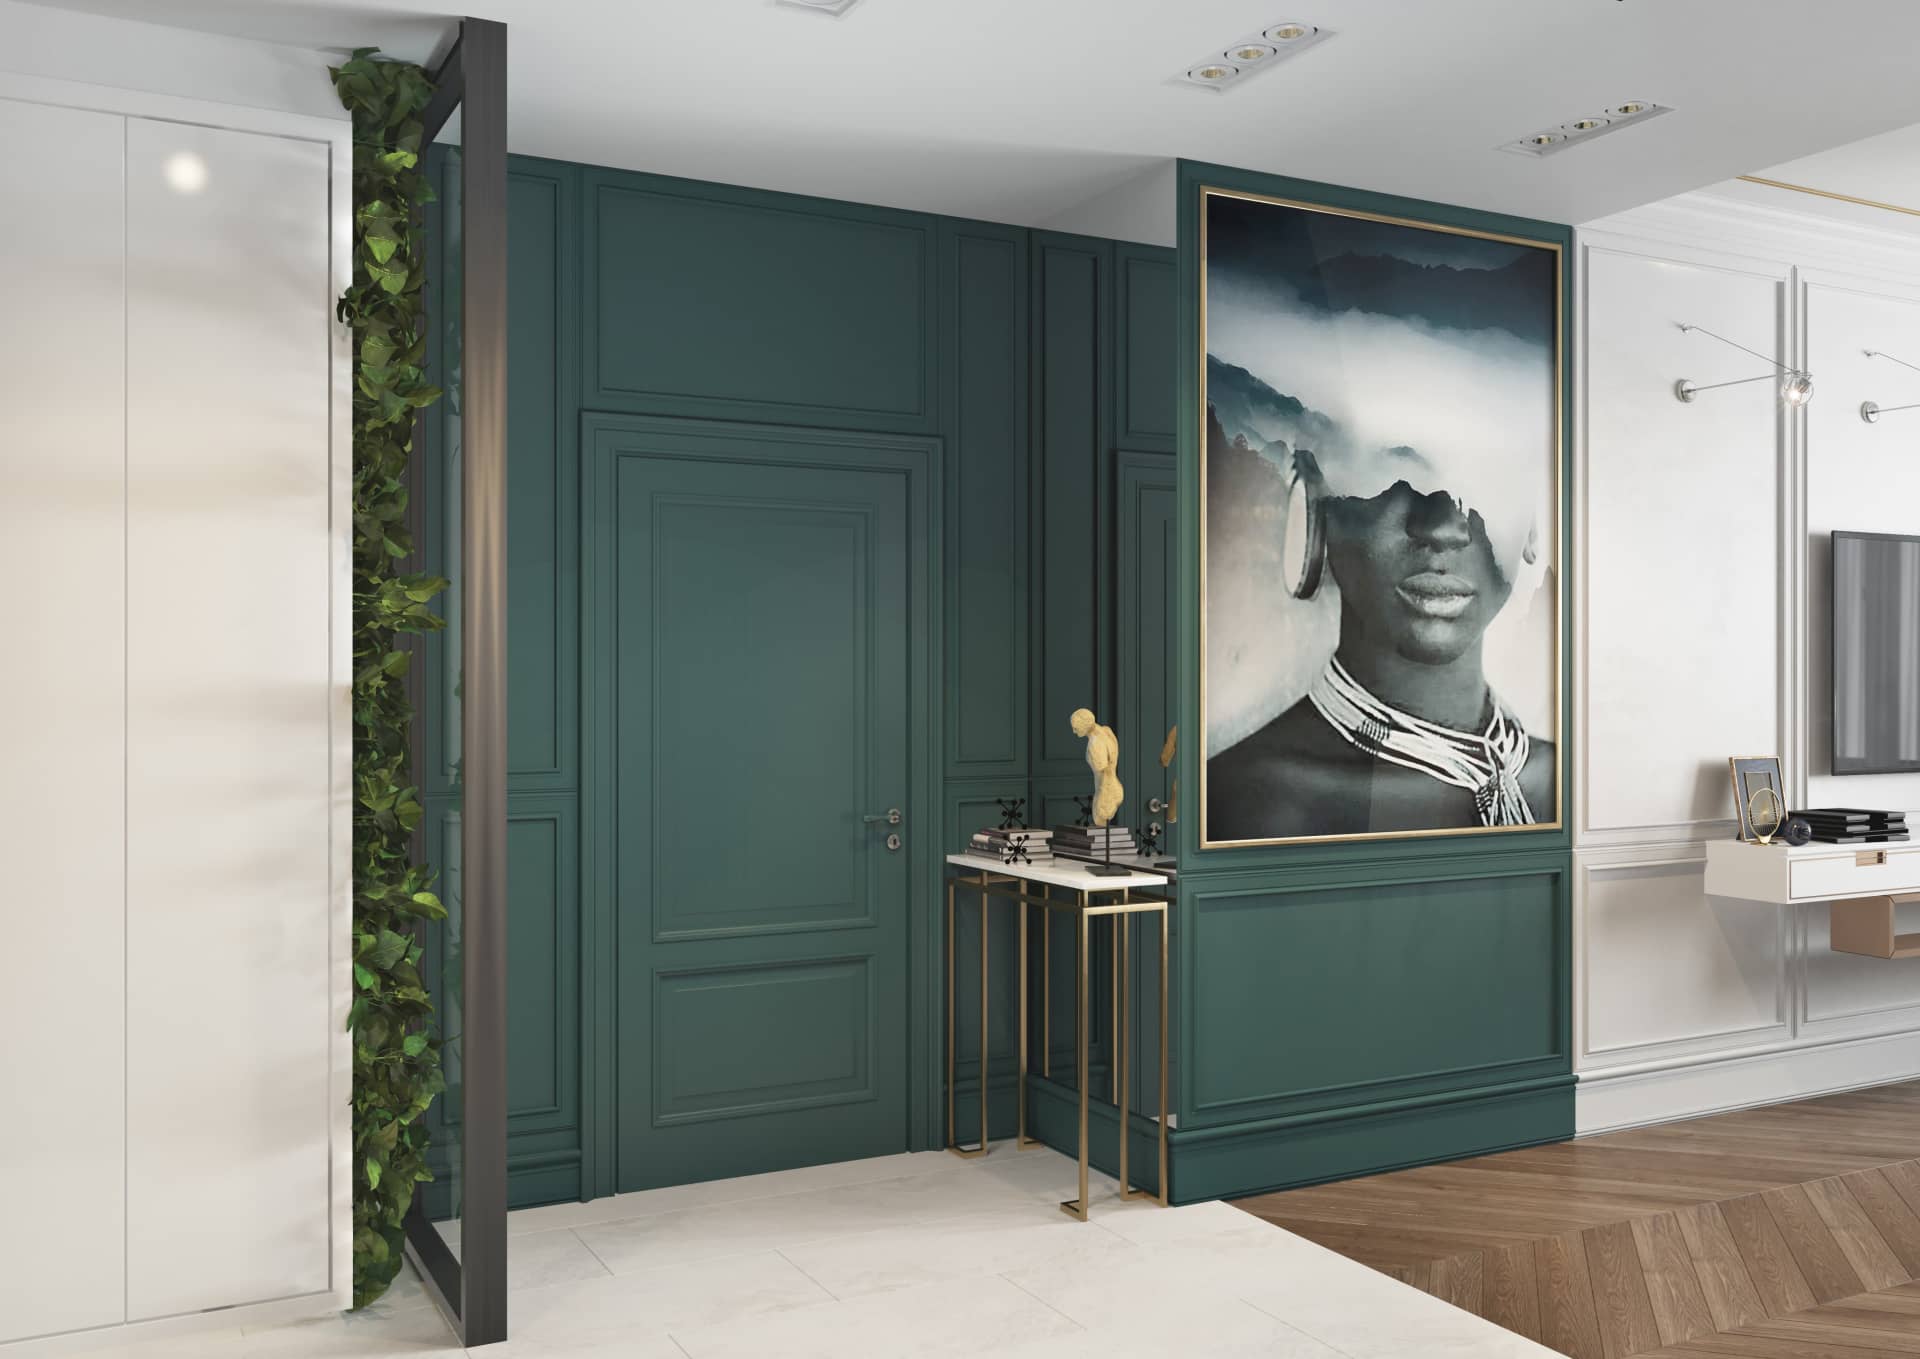 Зелёная матовая стена и дверь в спальне отлично дополняет интерьер